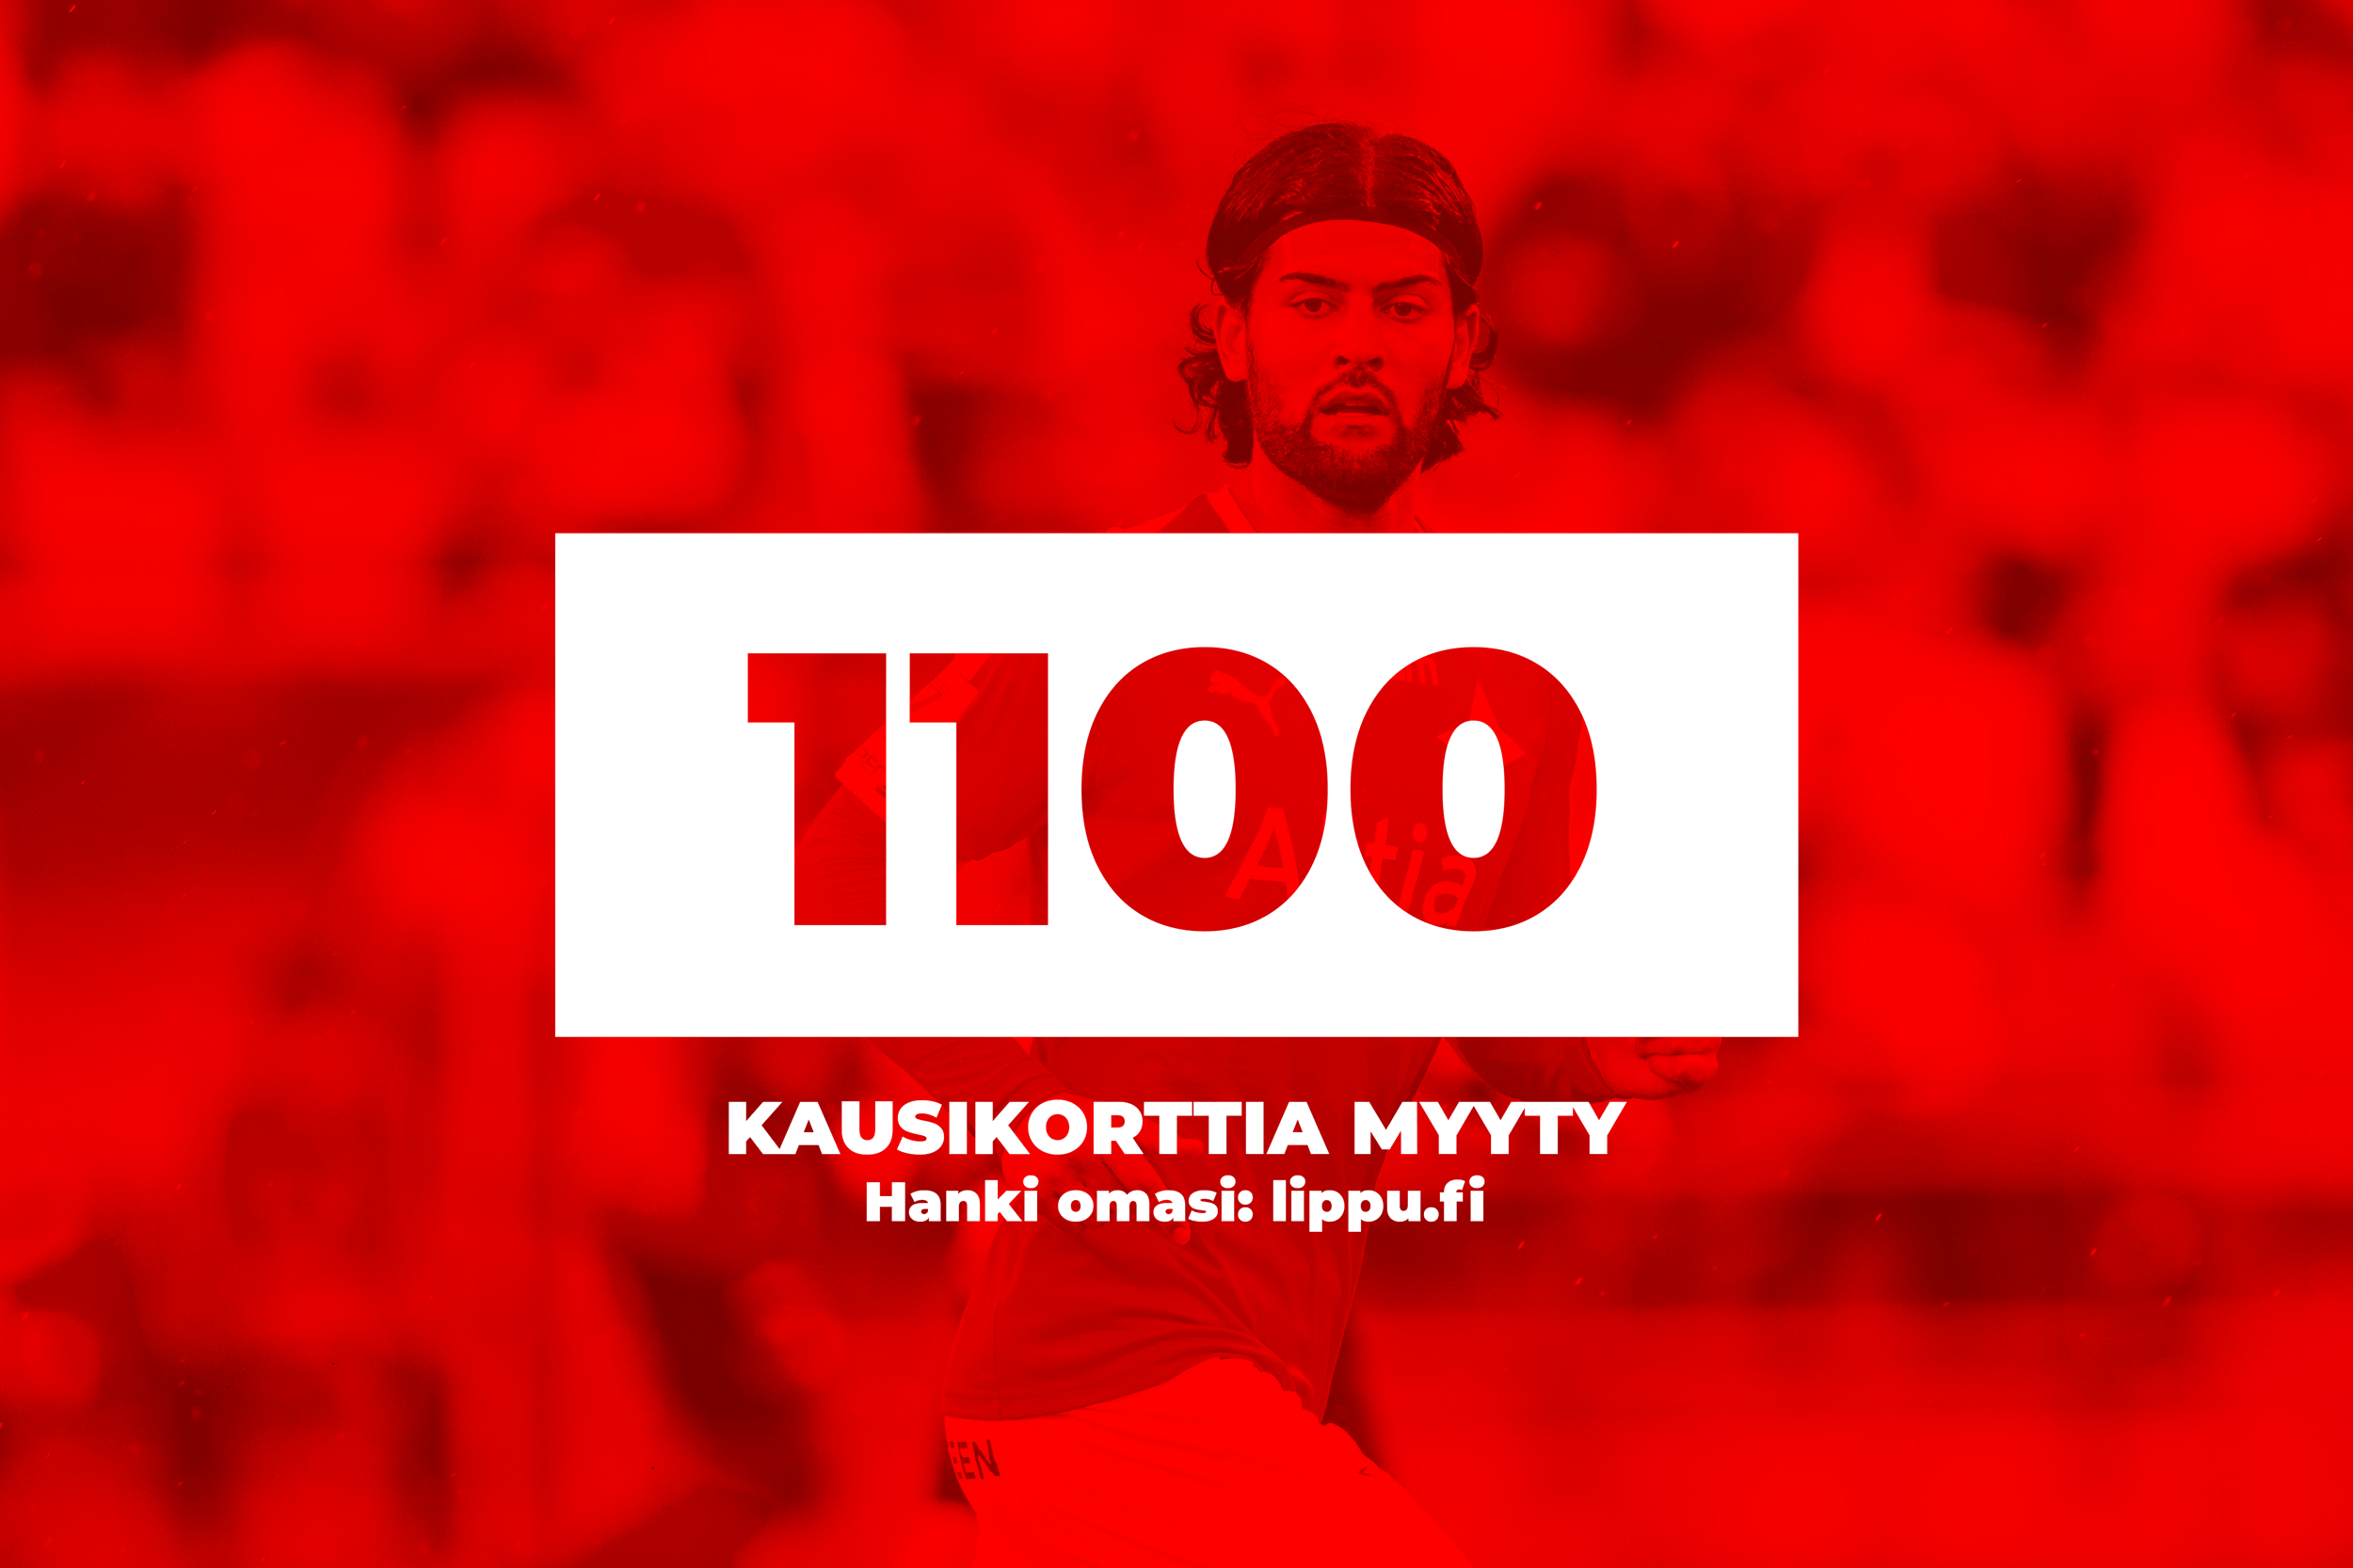 HIFK sålt 1100 säsongskort på rekordtid – snart hälften av Östra läktarens utmaning uppnådd